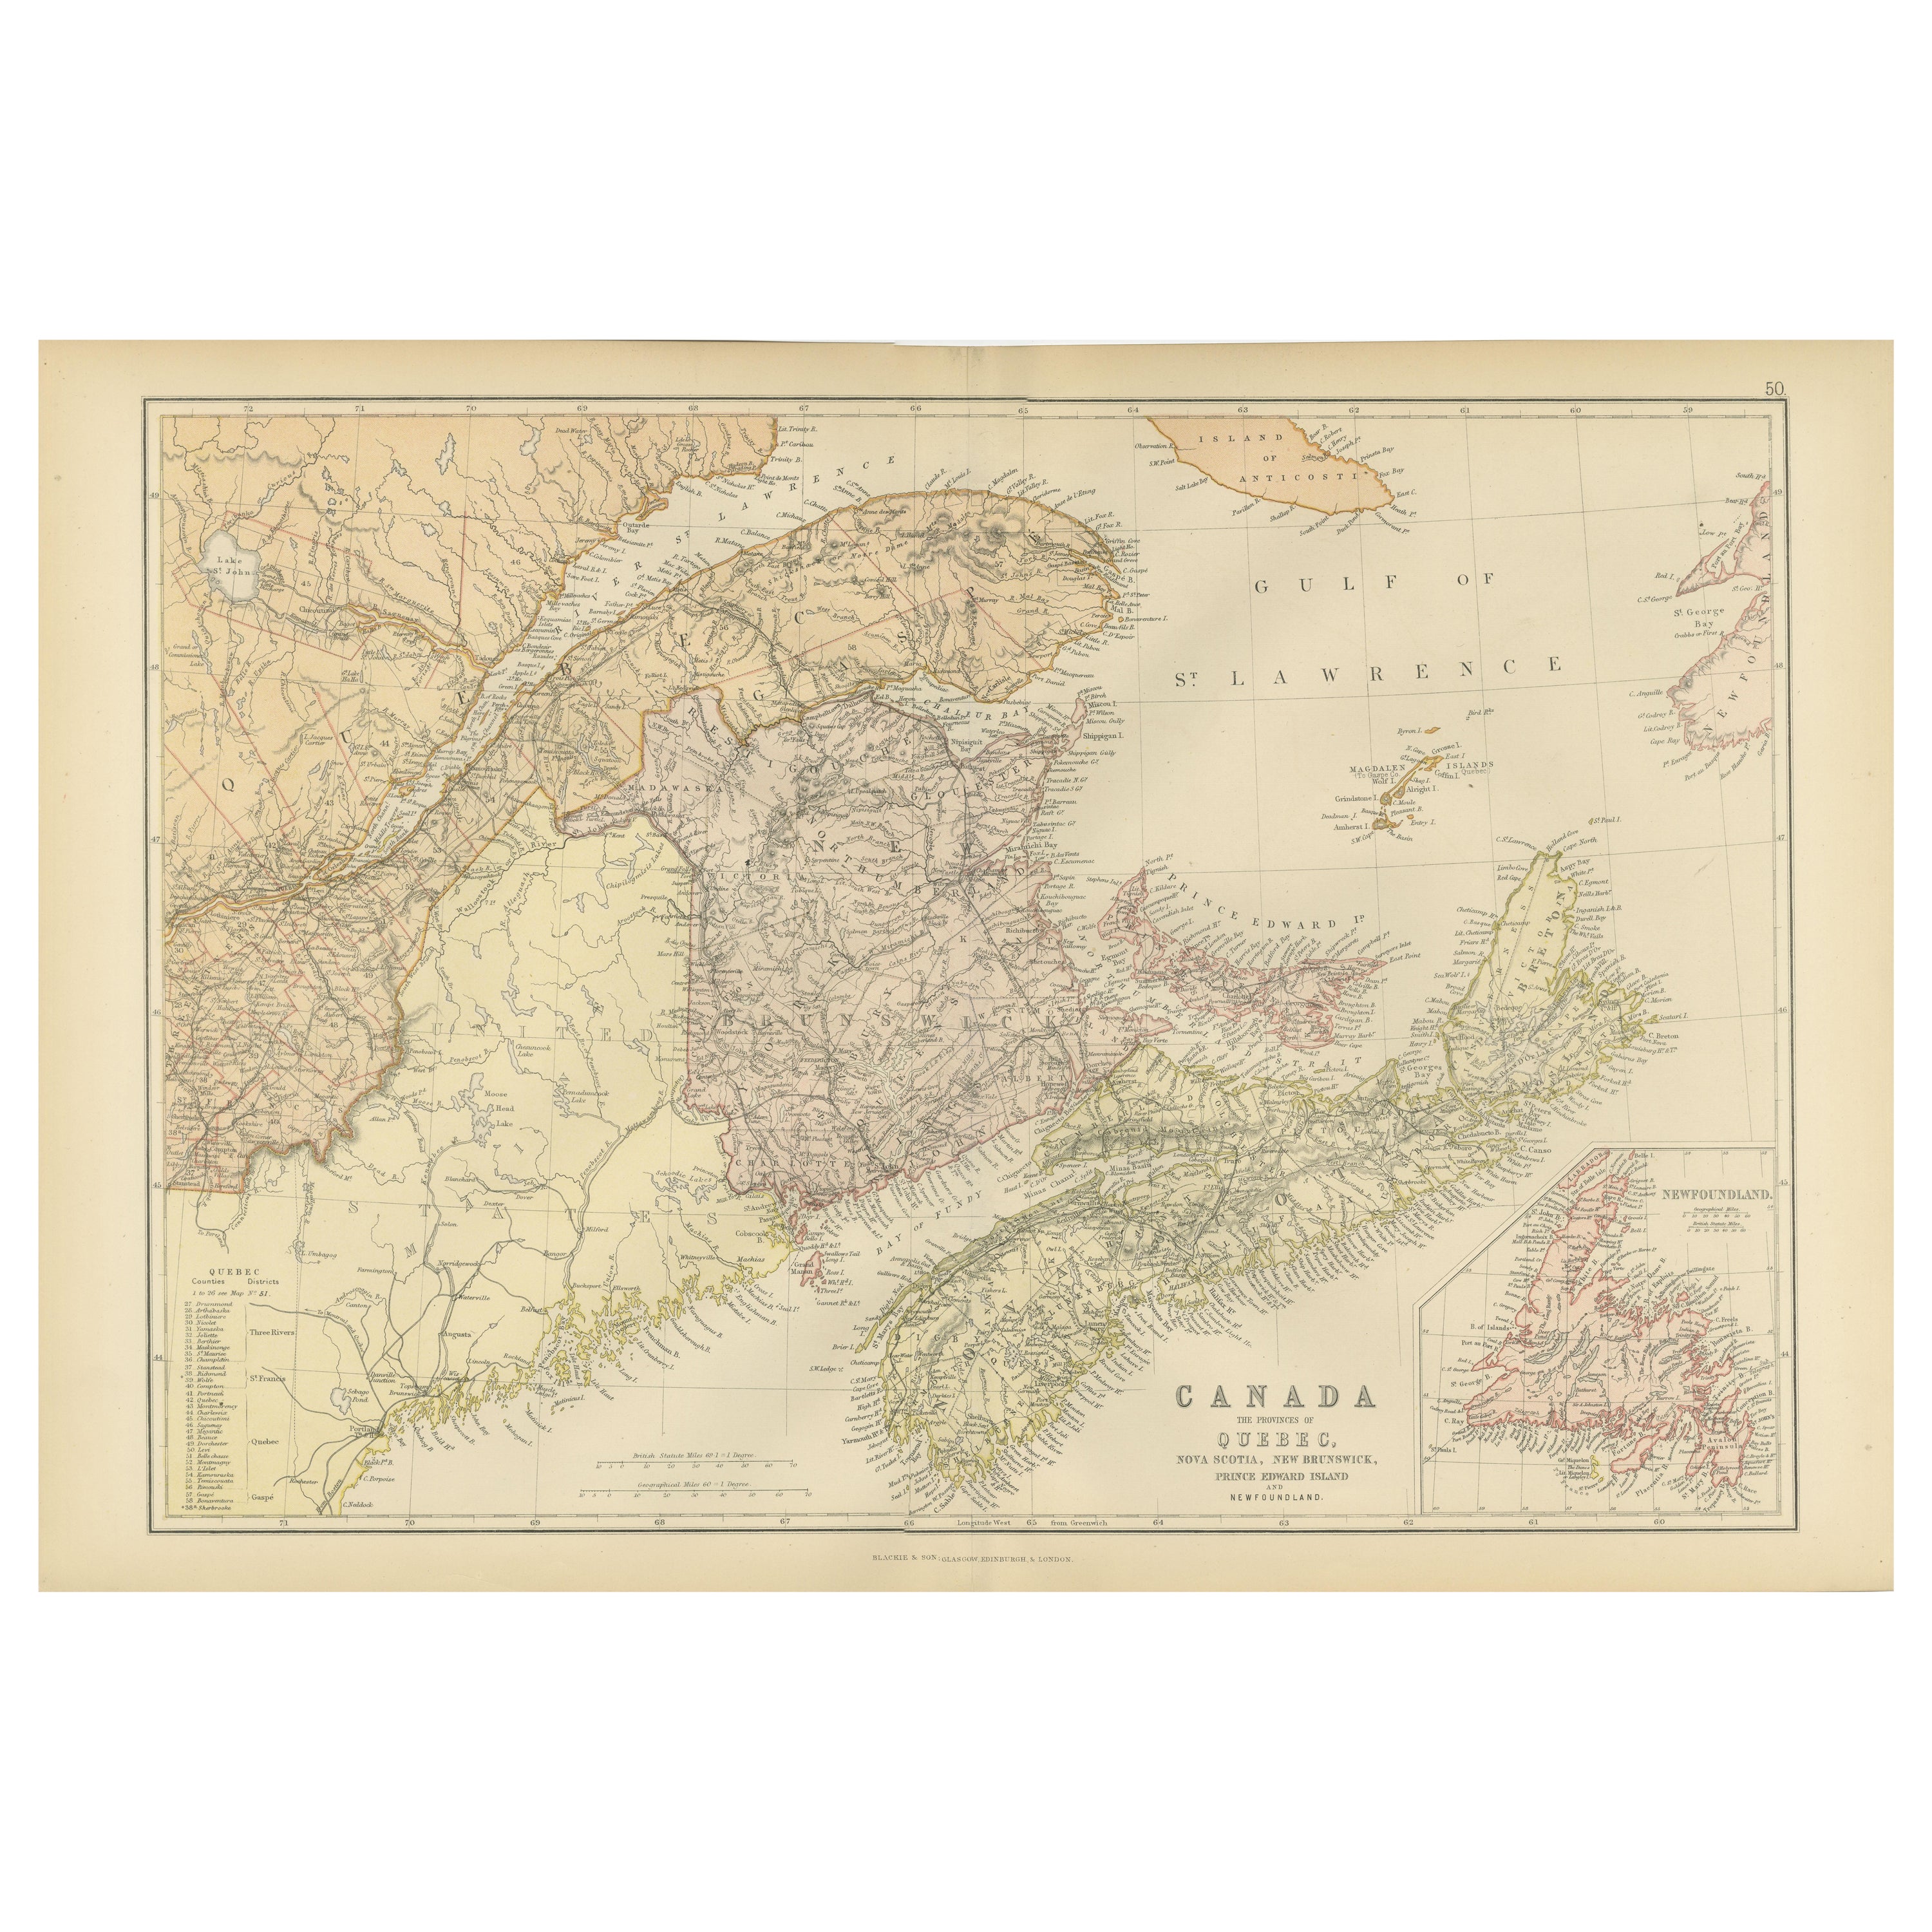 Dekorative antike Karte des östlichen Kanadas, veröffentlicht 1882